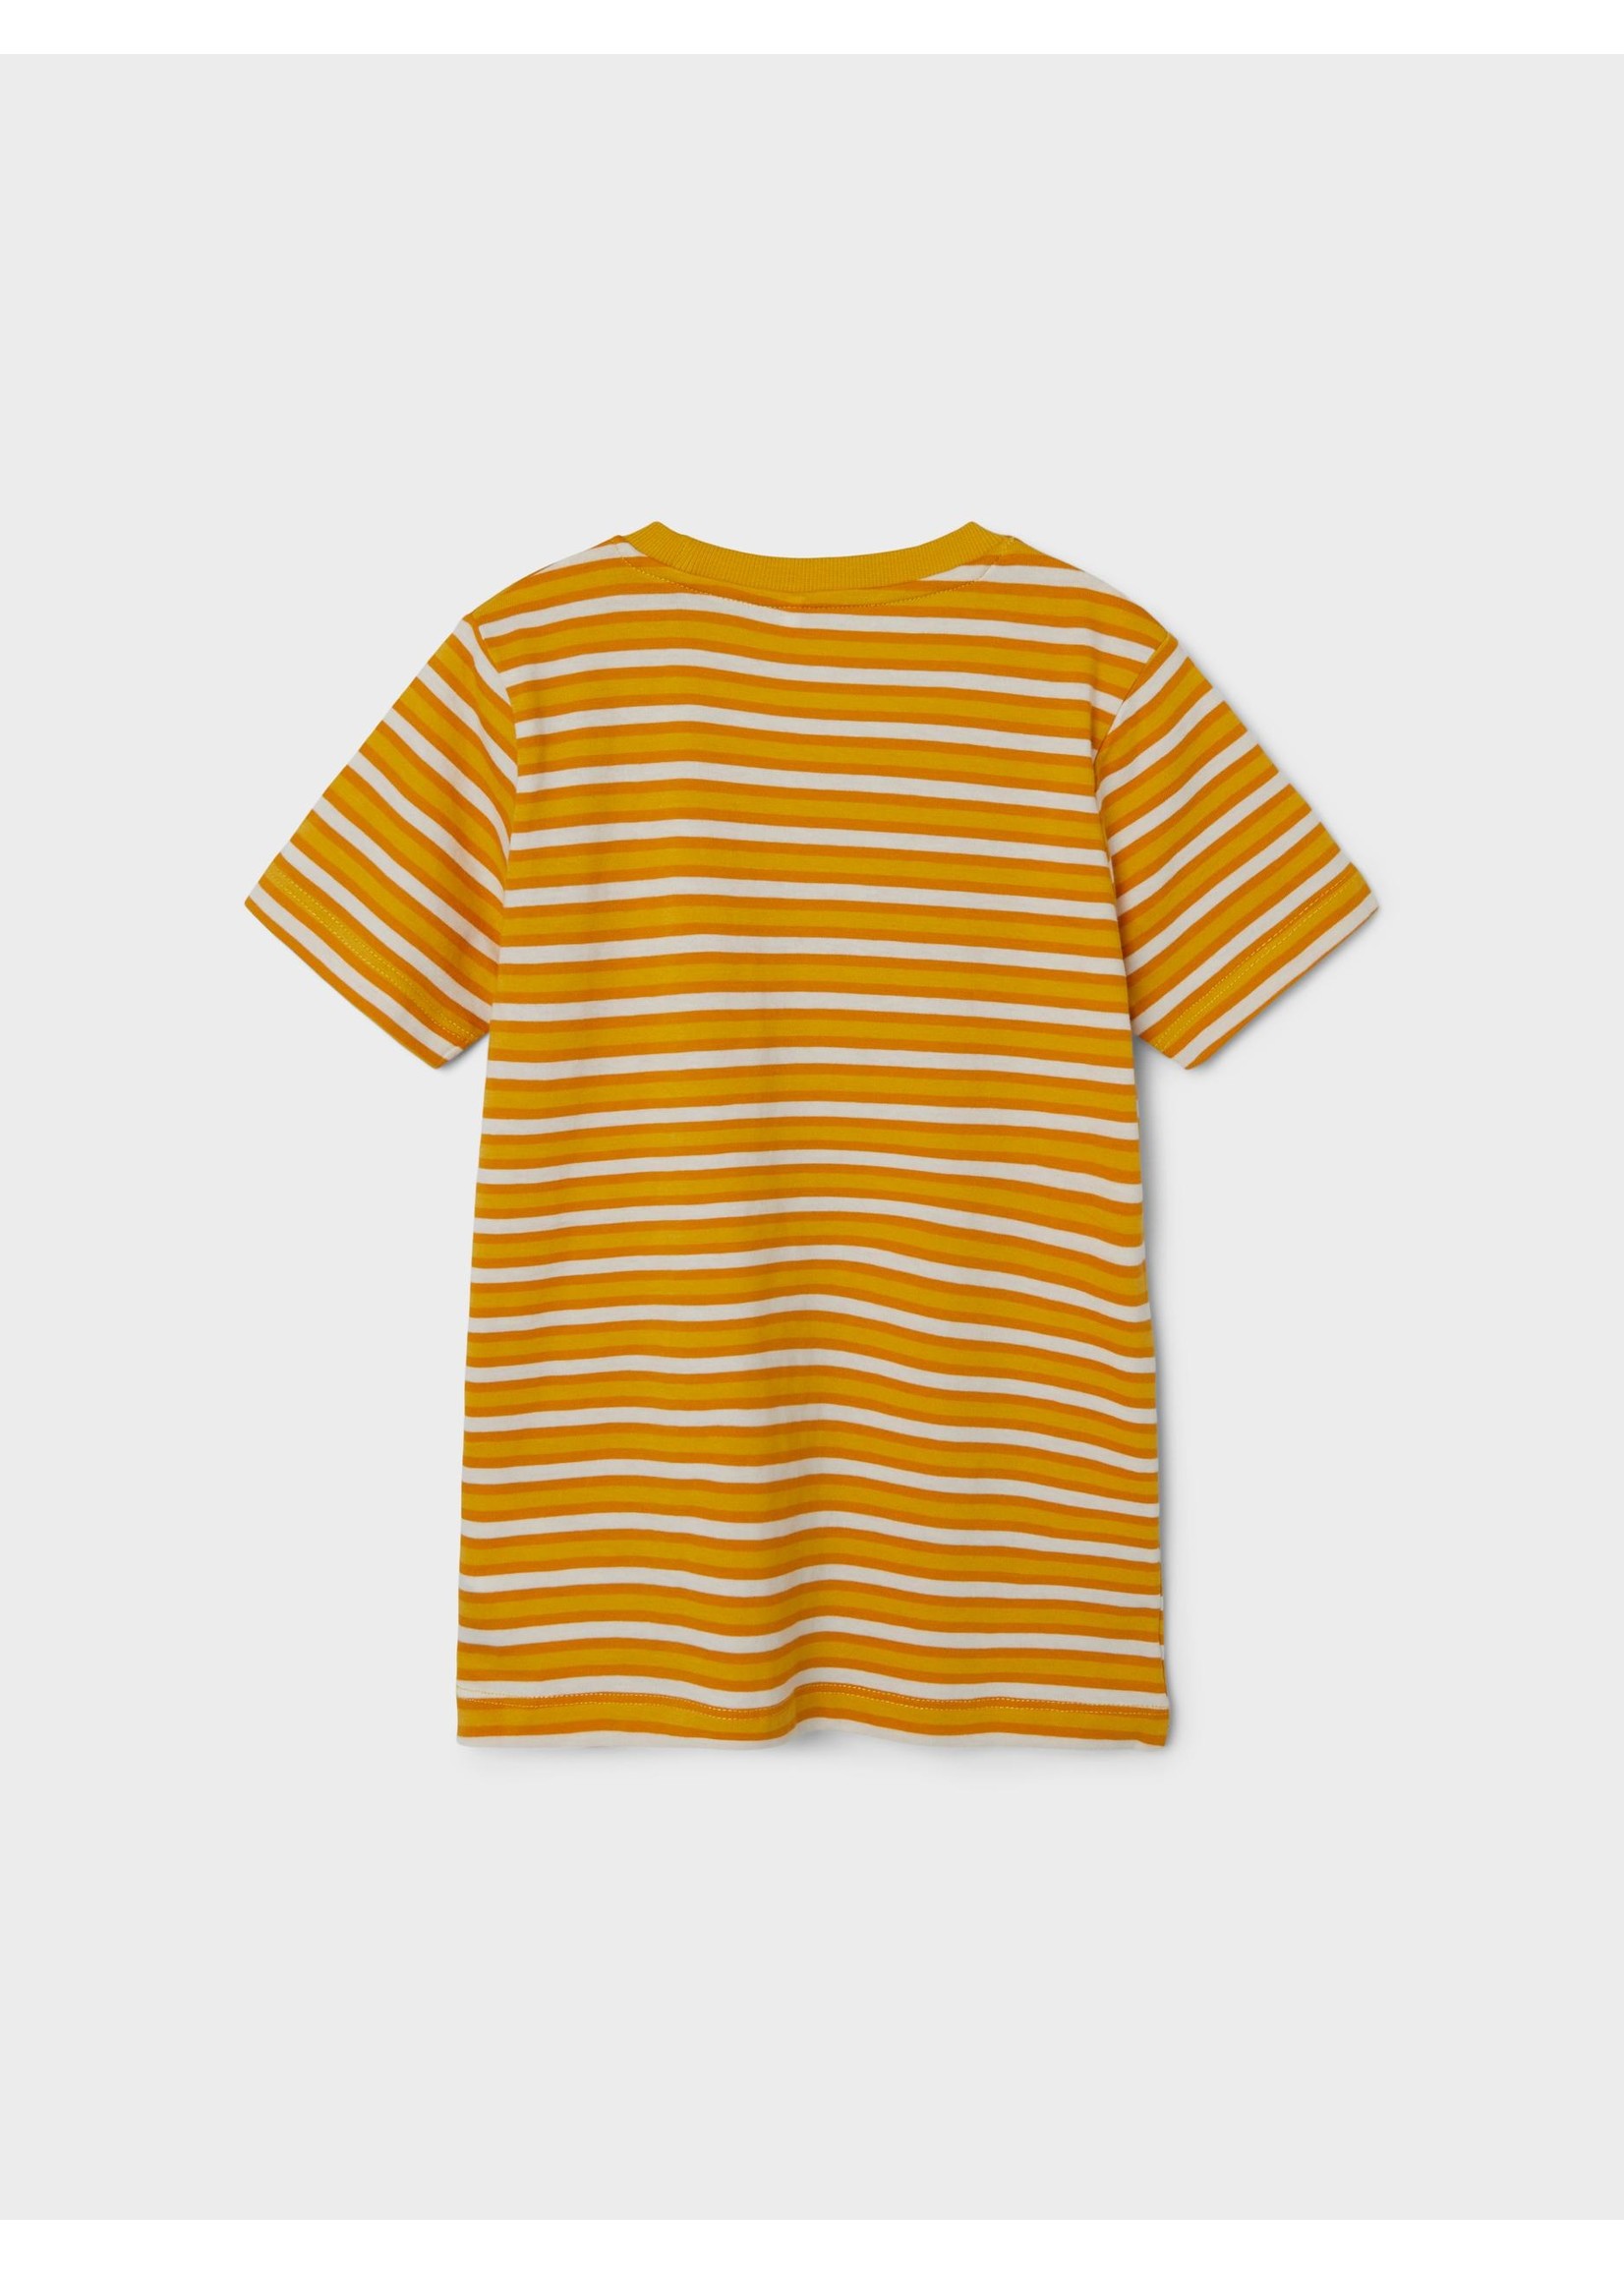 NAME IT T-Shirt Geel/Oranje